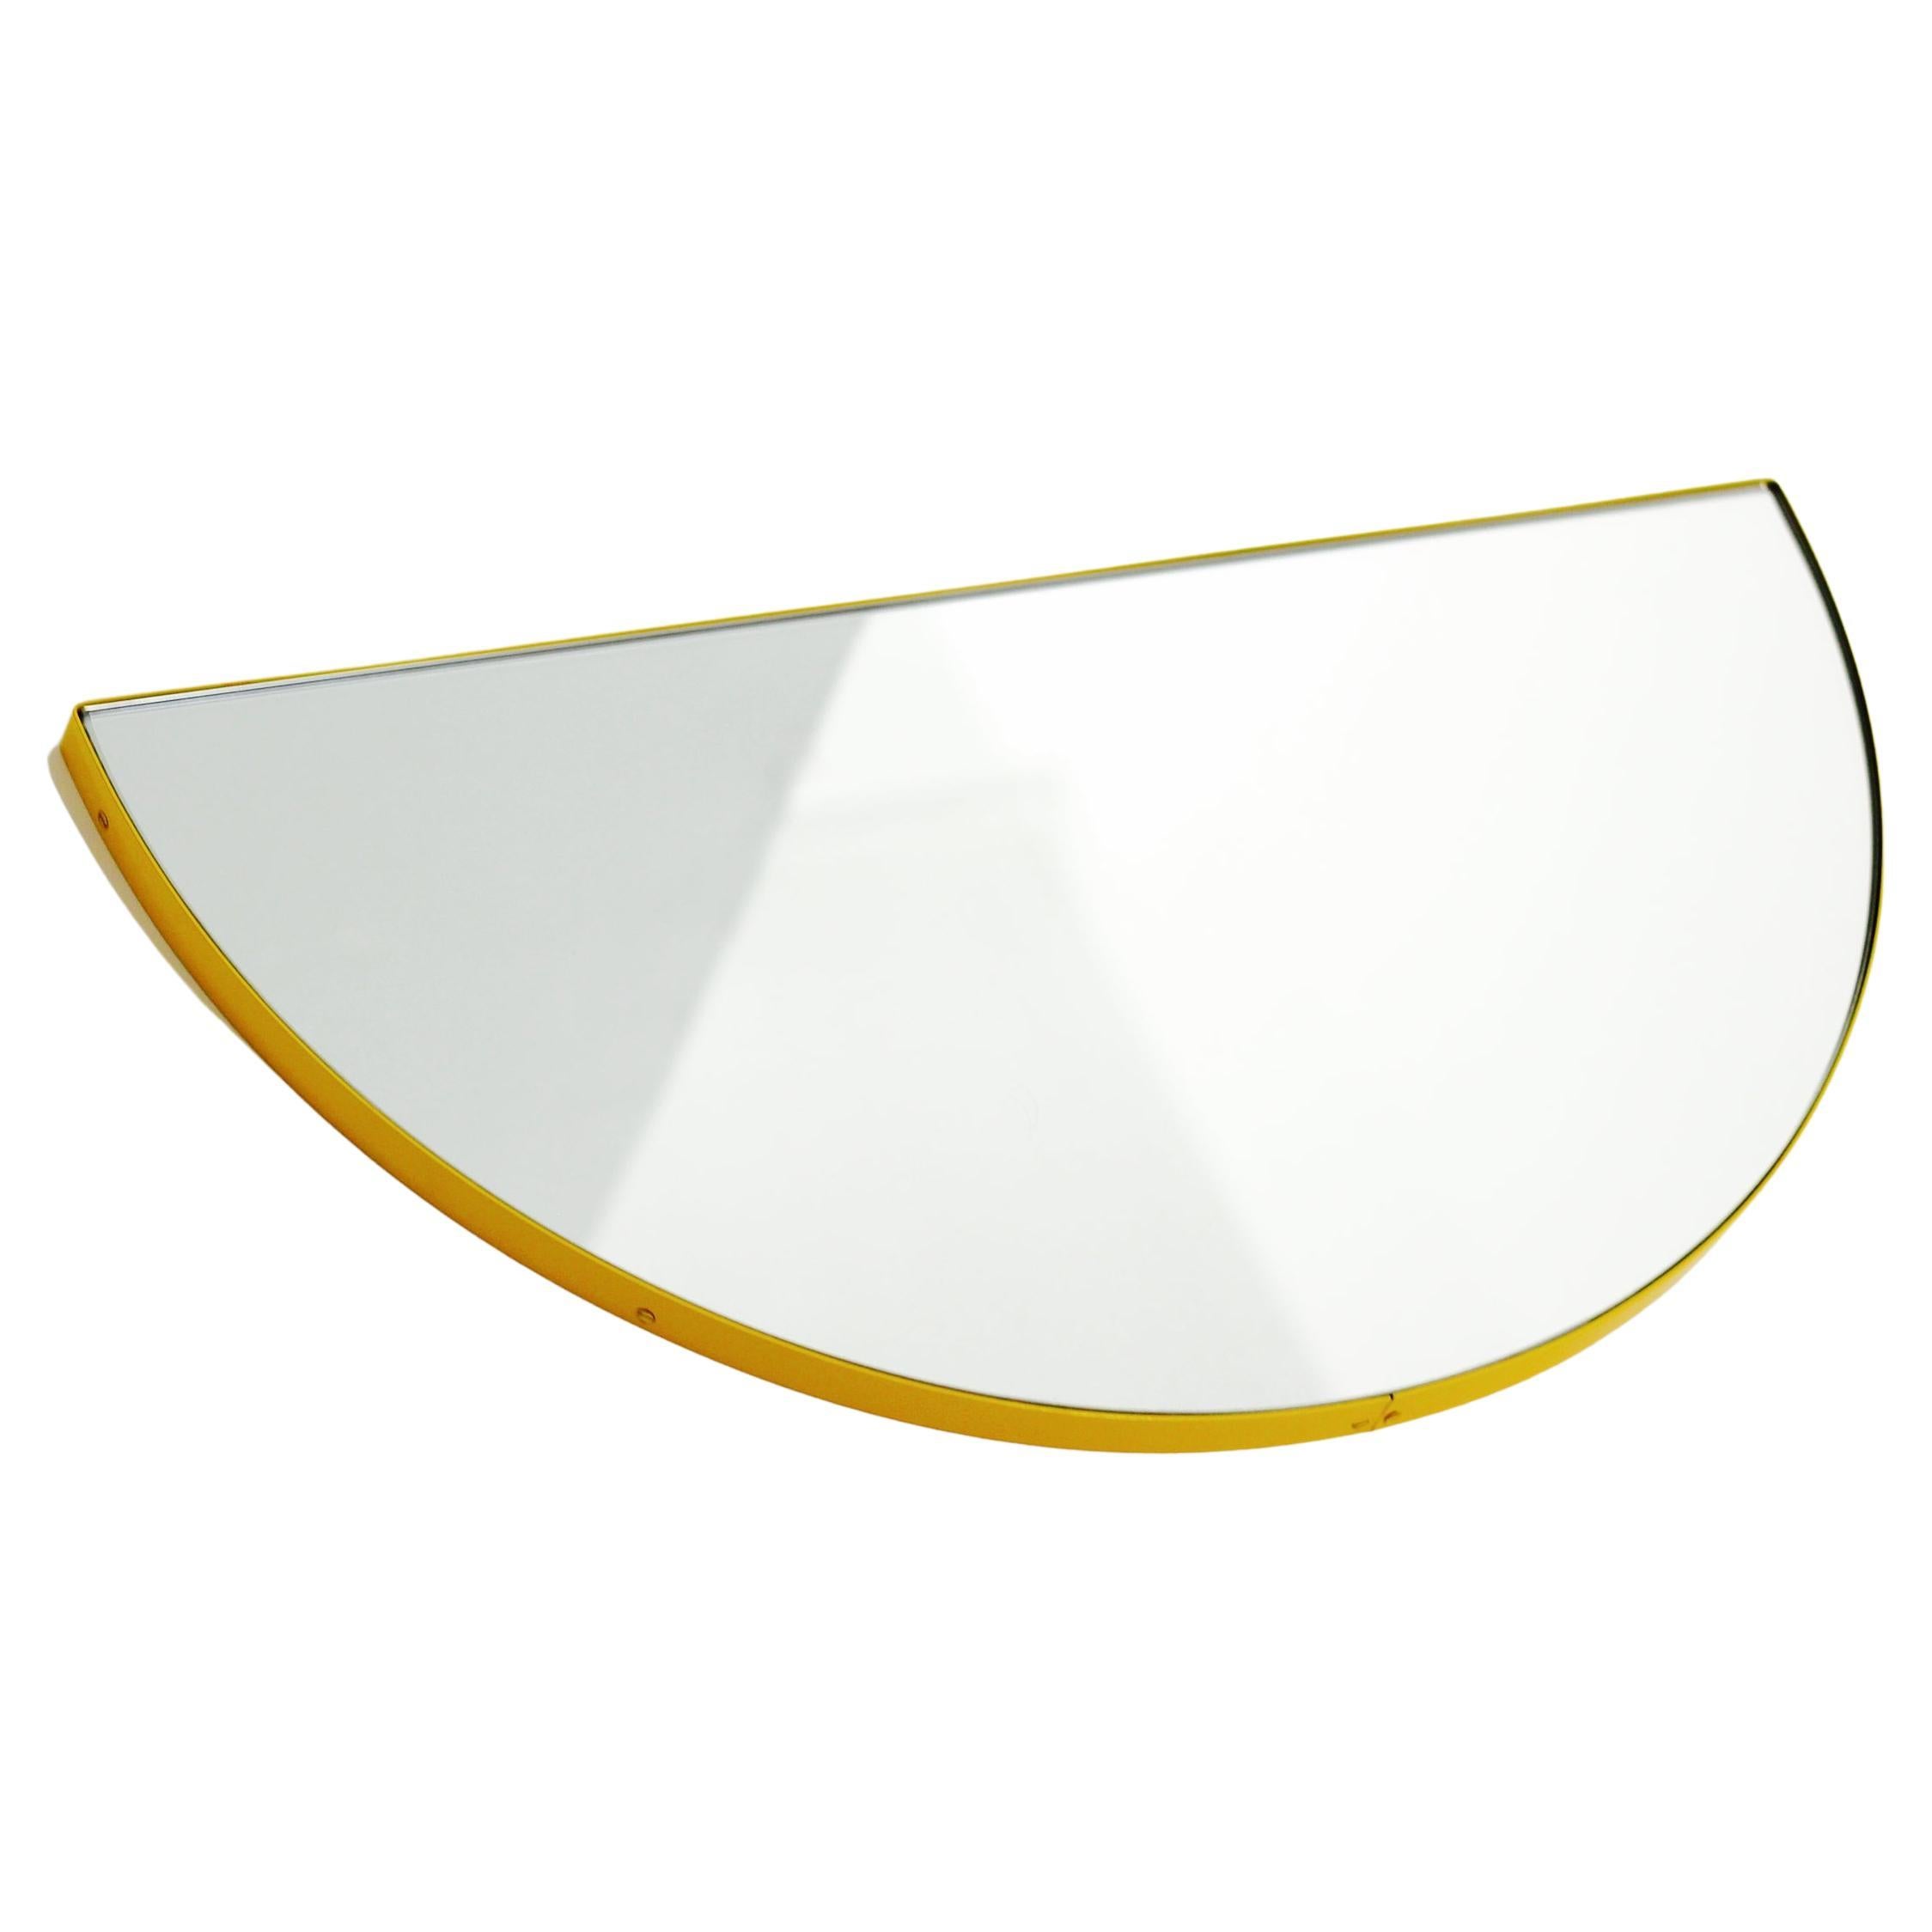 Luna, halbkugelförmiger moderner Spiegel mit gelbem Rahmen, anpassbar, normal